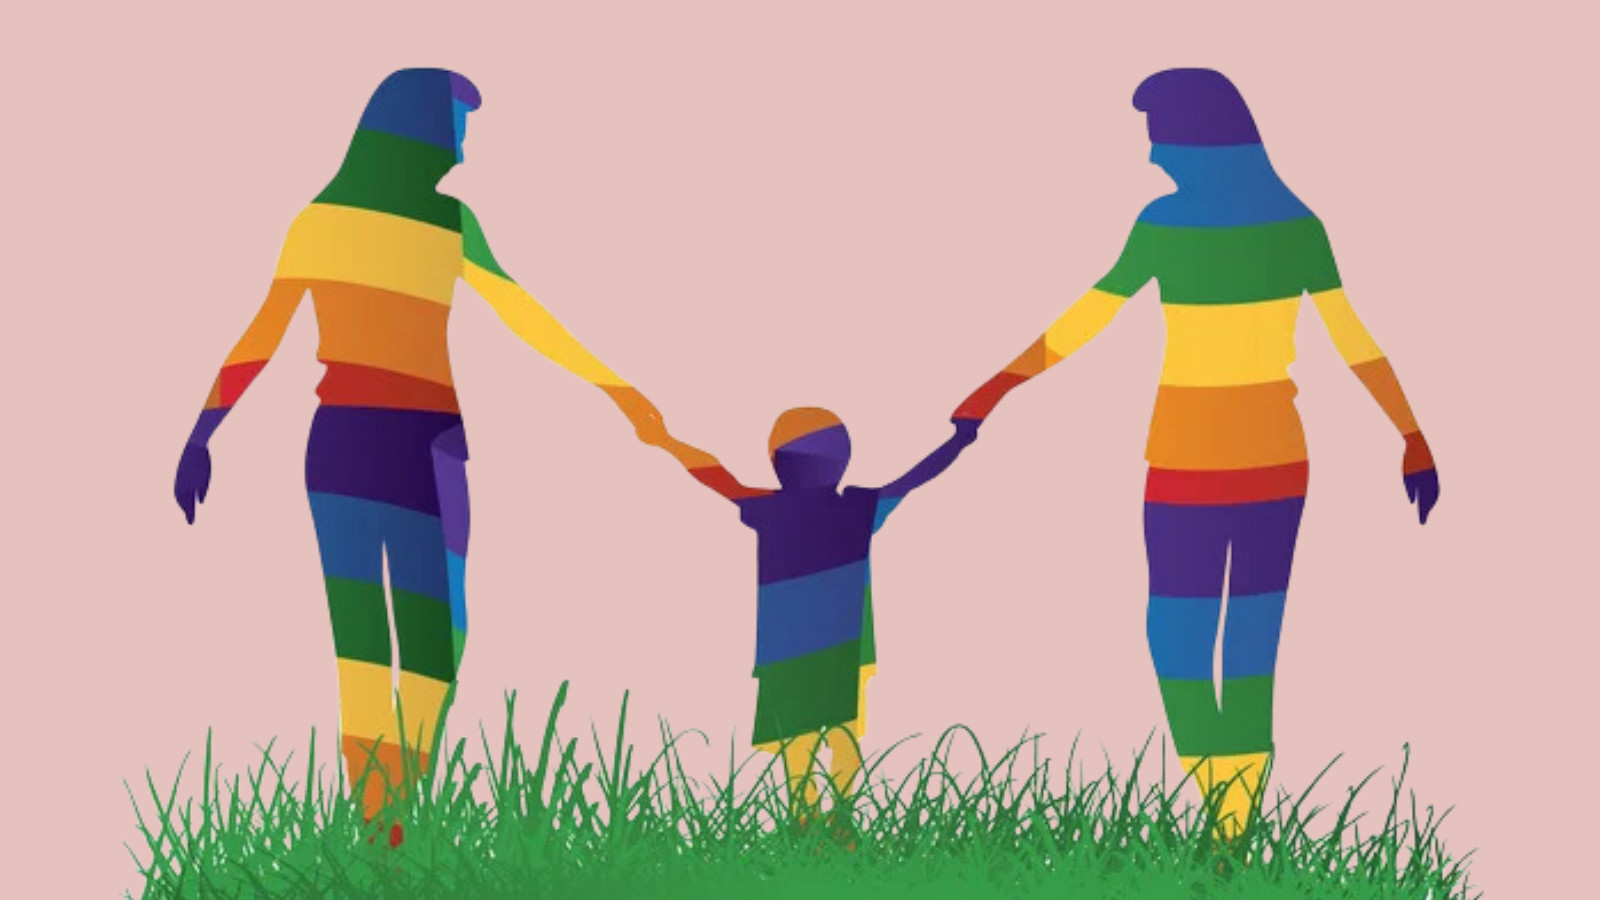 Queer ebeveynlik üzerine: Aşk (d)olsun “aile” sana! | Kaos GL - LGBTİ+ Haber Portalı Gökkuşağı Forumu Köşe Yazısı